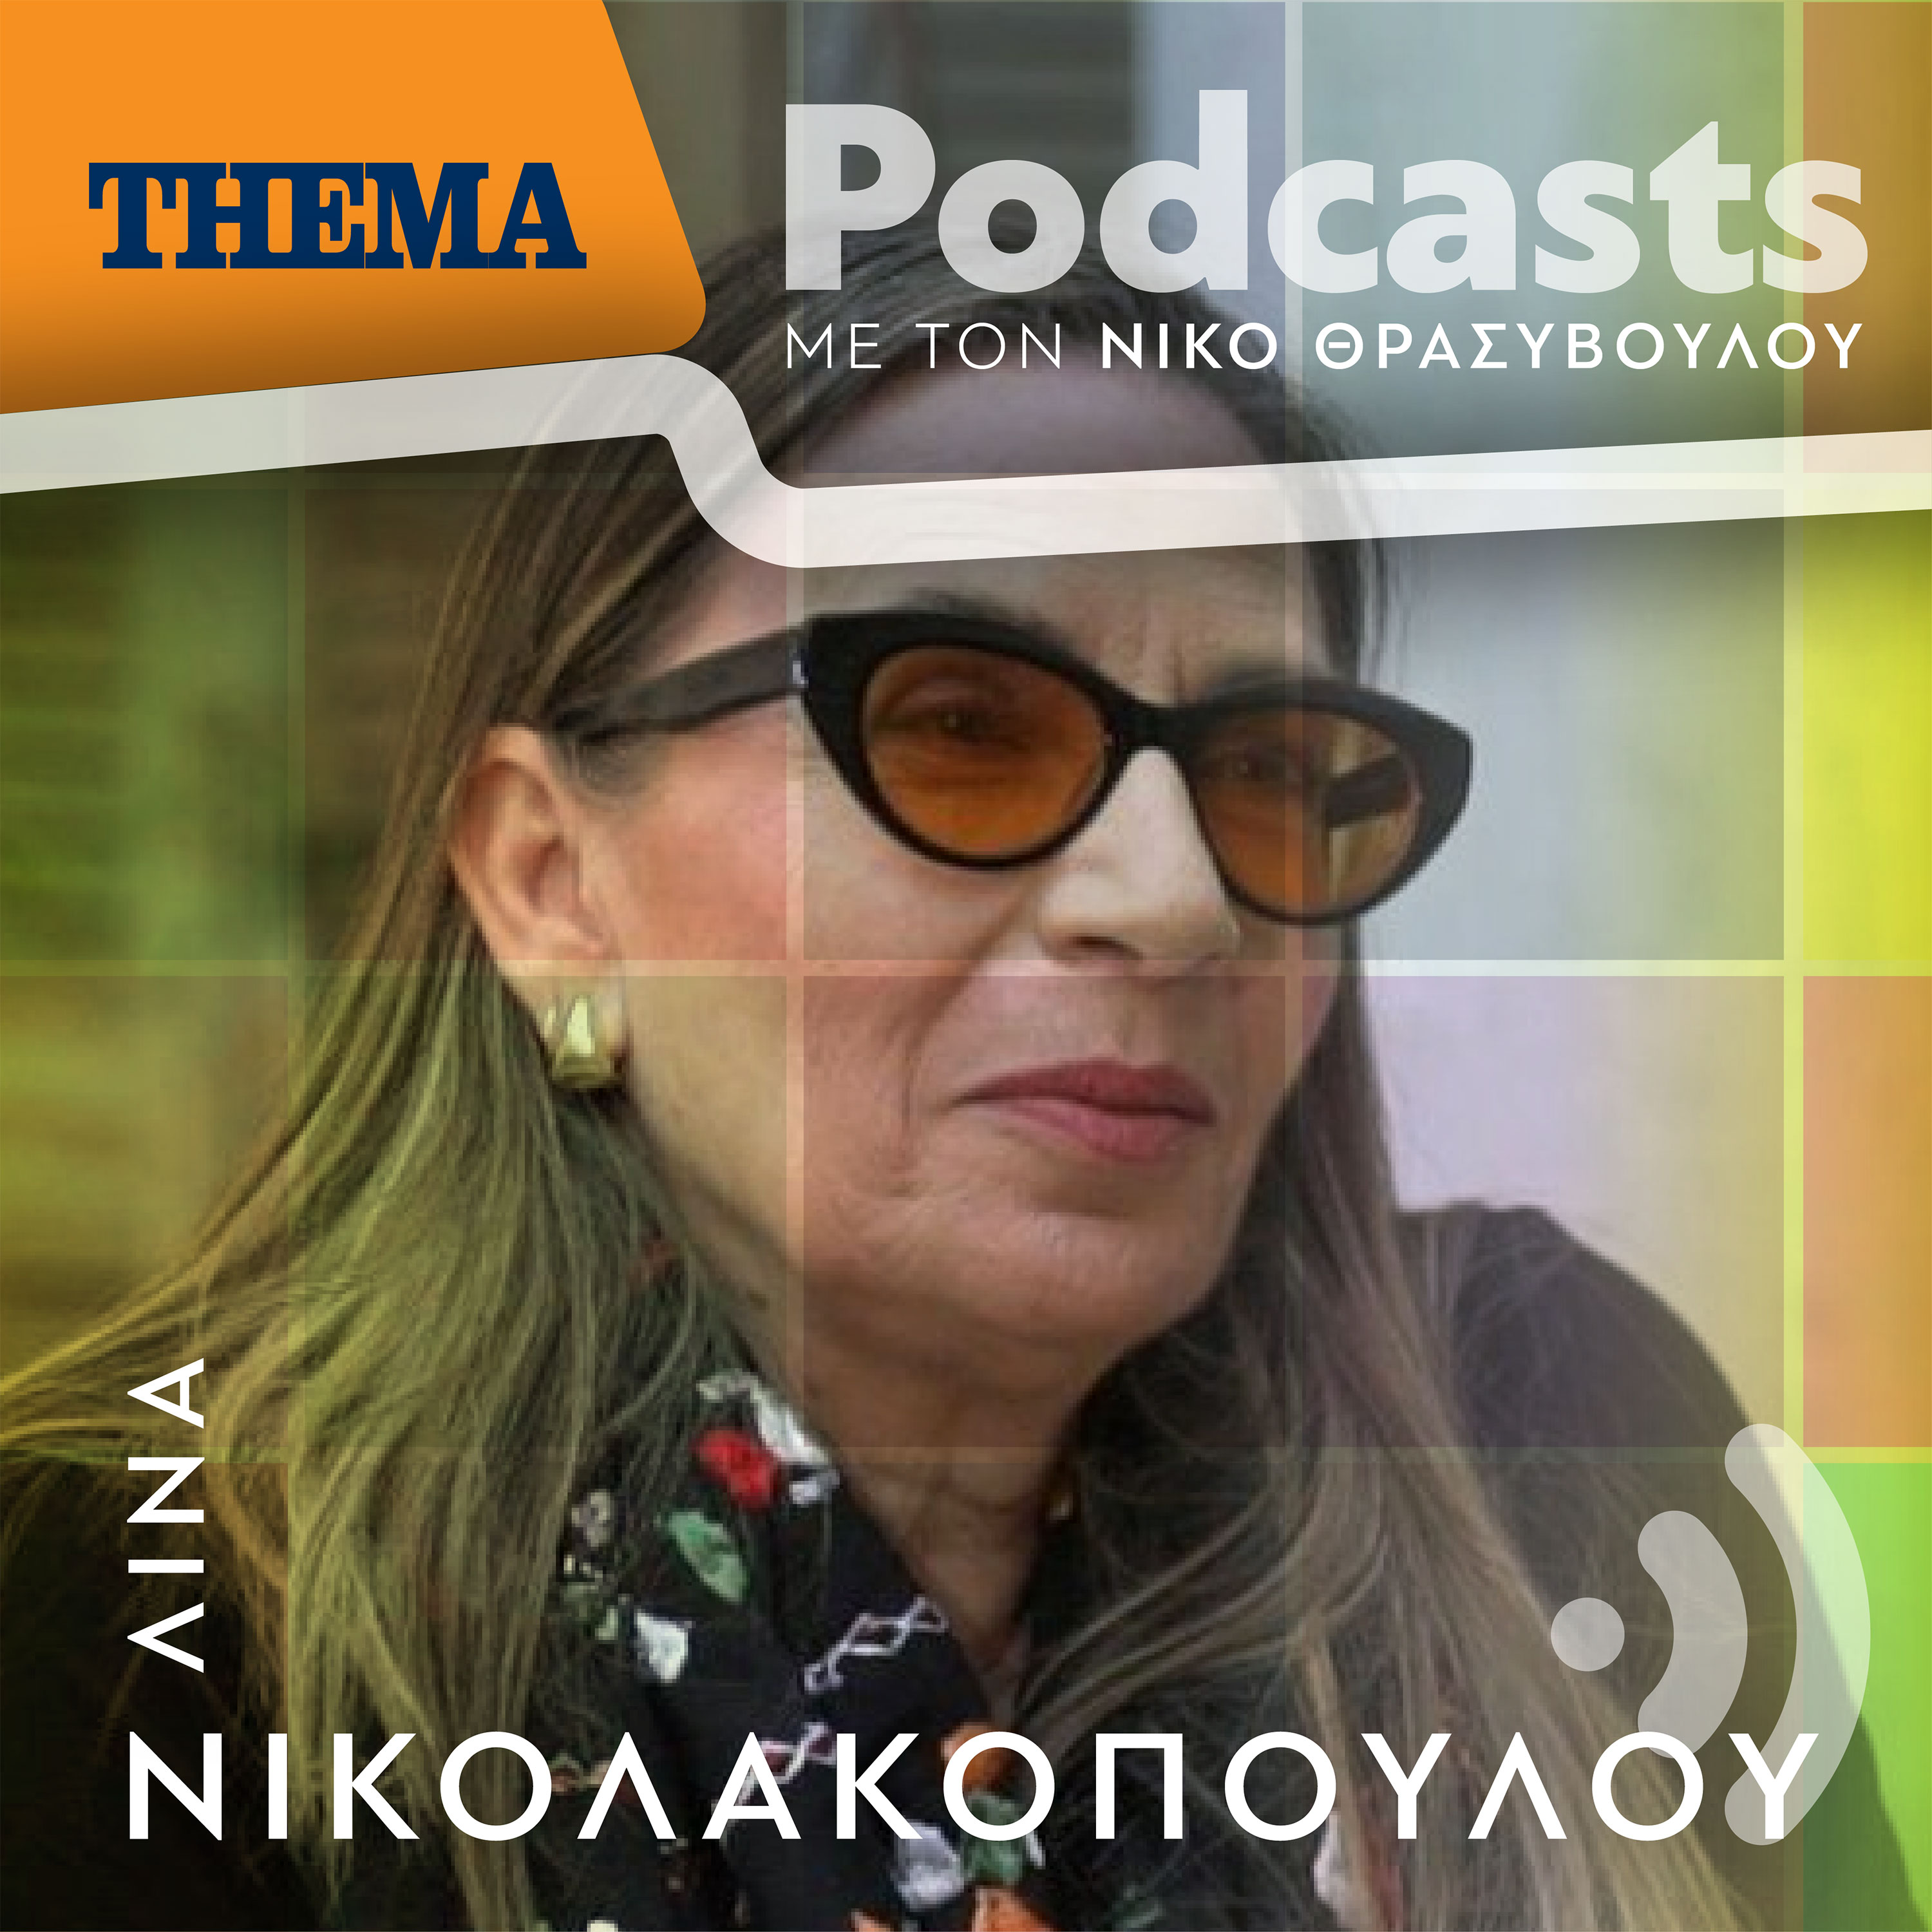 Λίνα Νικολακοπούλου: «Είναι υποχρέωση μας να στηρίζουμε καλούς τραγουδιστές που θα υπερασπιστούν τα ρεπερτόρια μας»